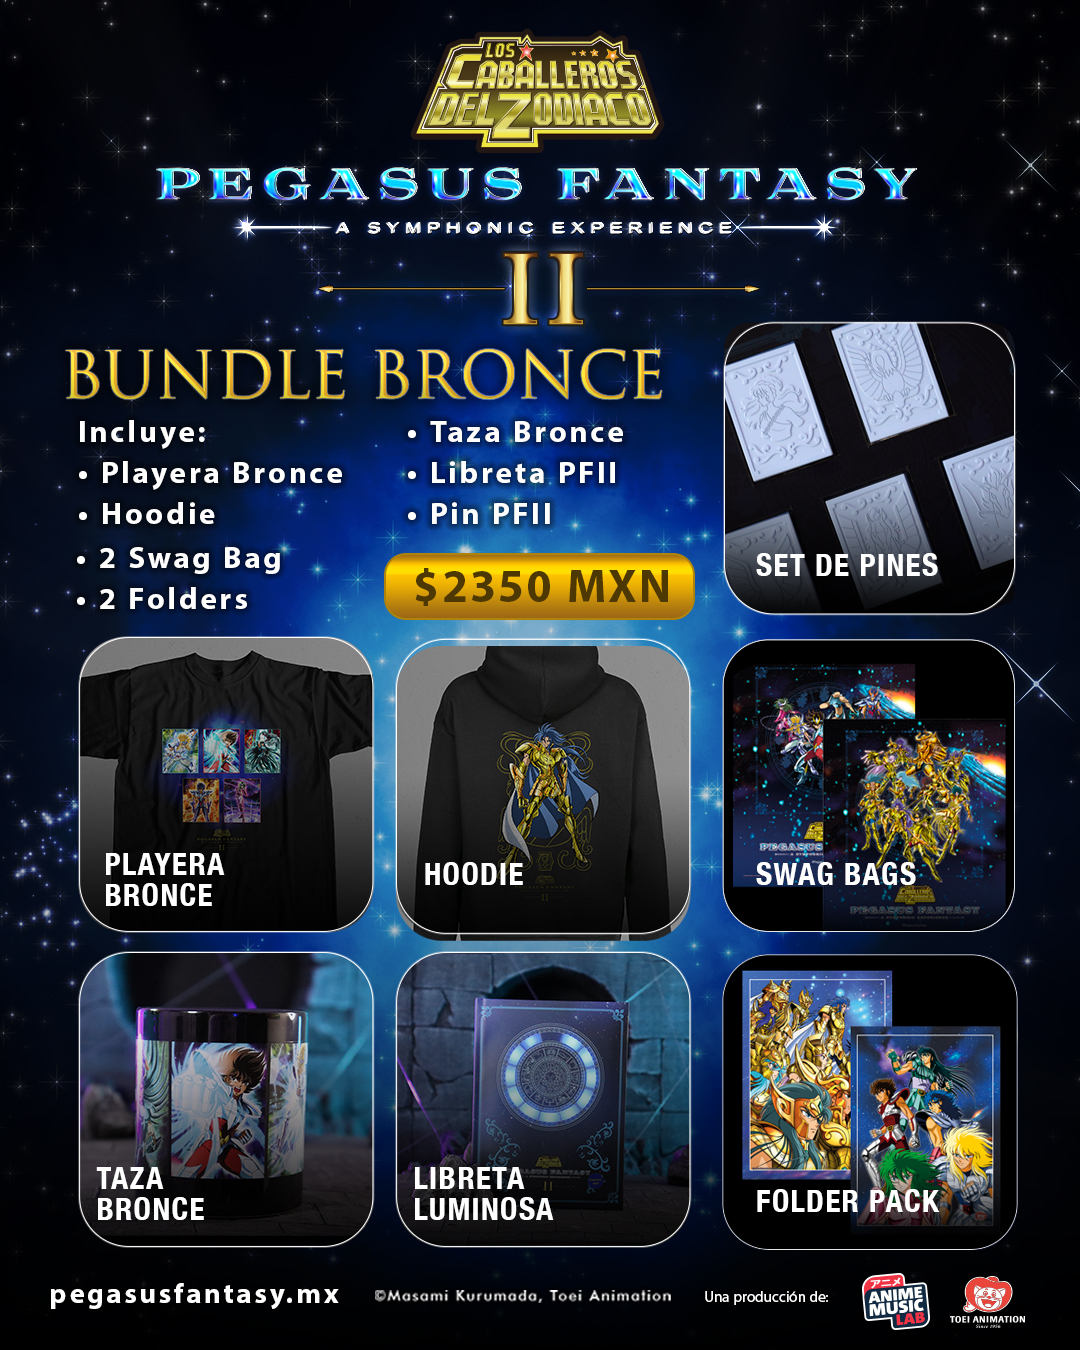 Pegasus Fantasy II - A symphonic experience nos deleita con su mercancía oficial 20